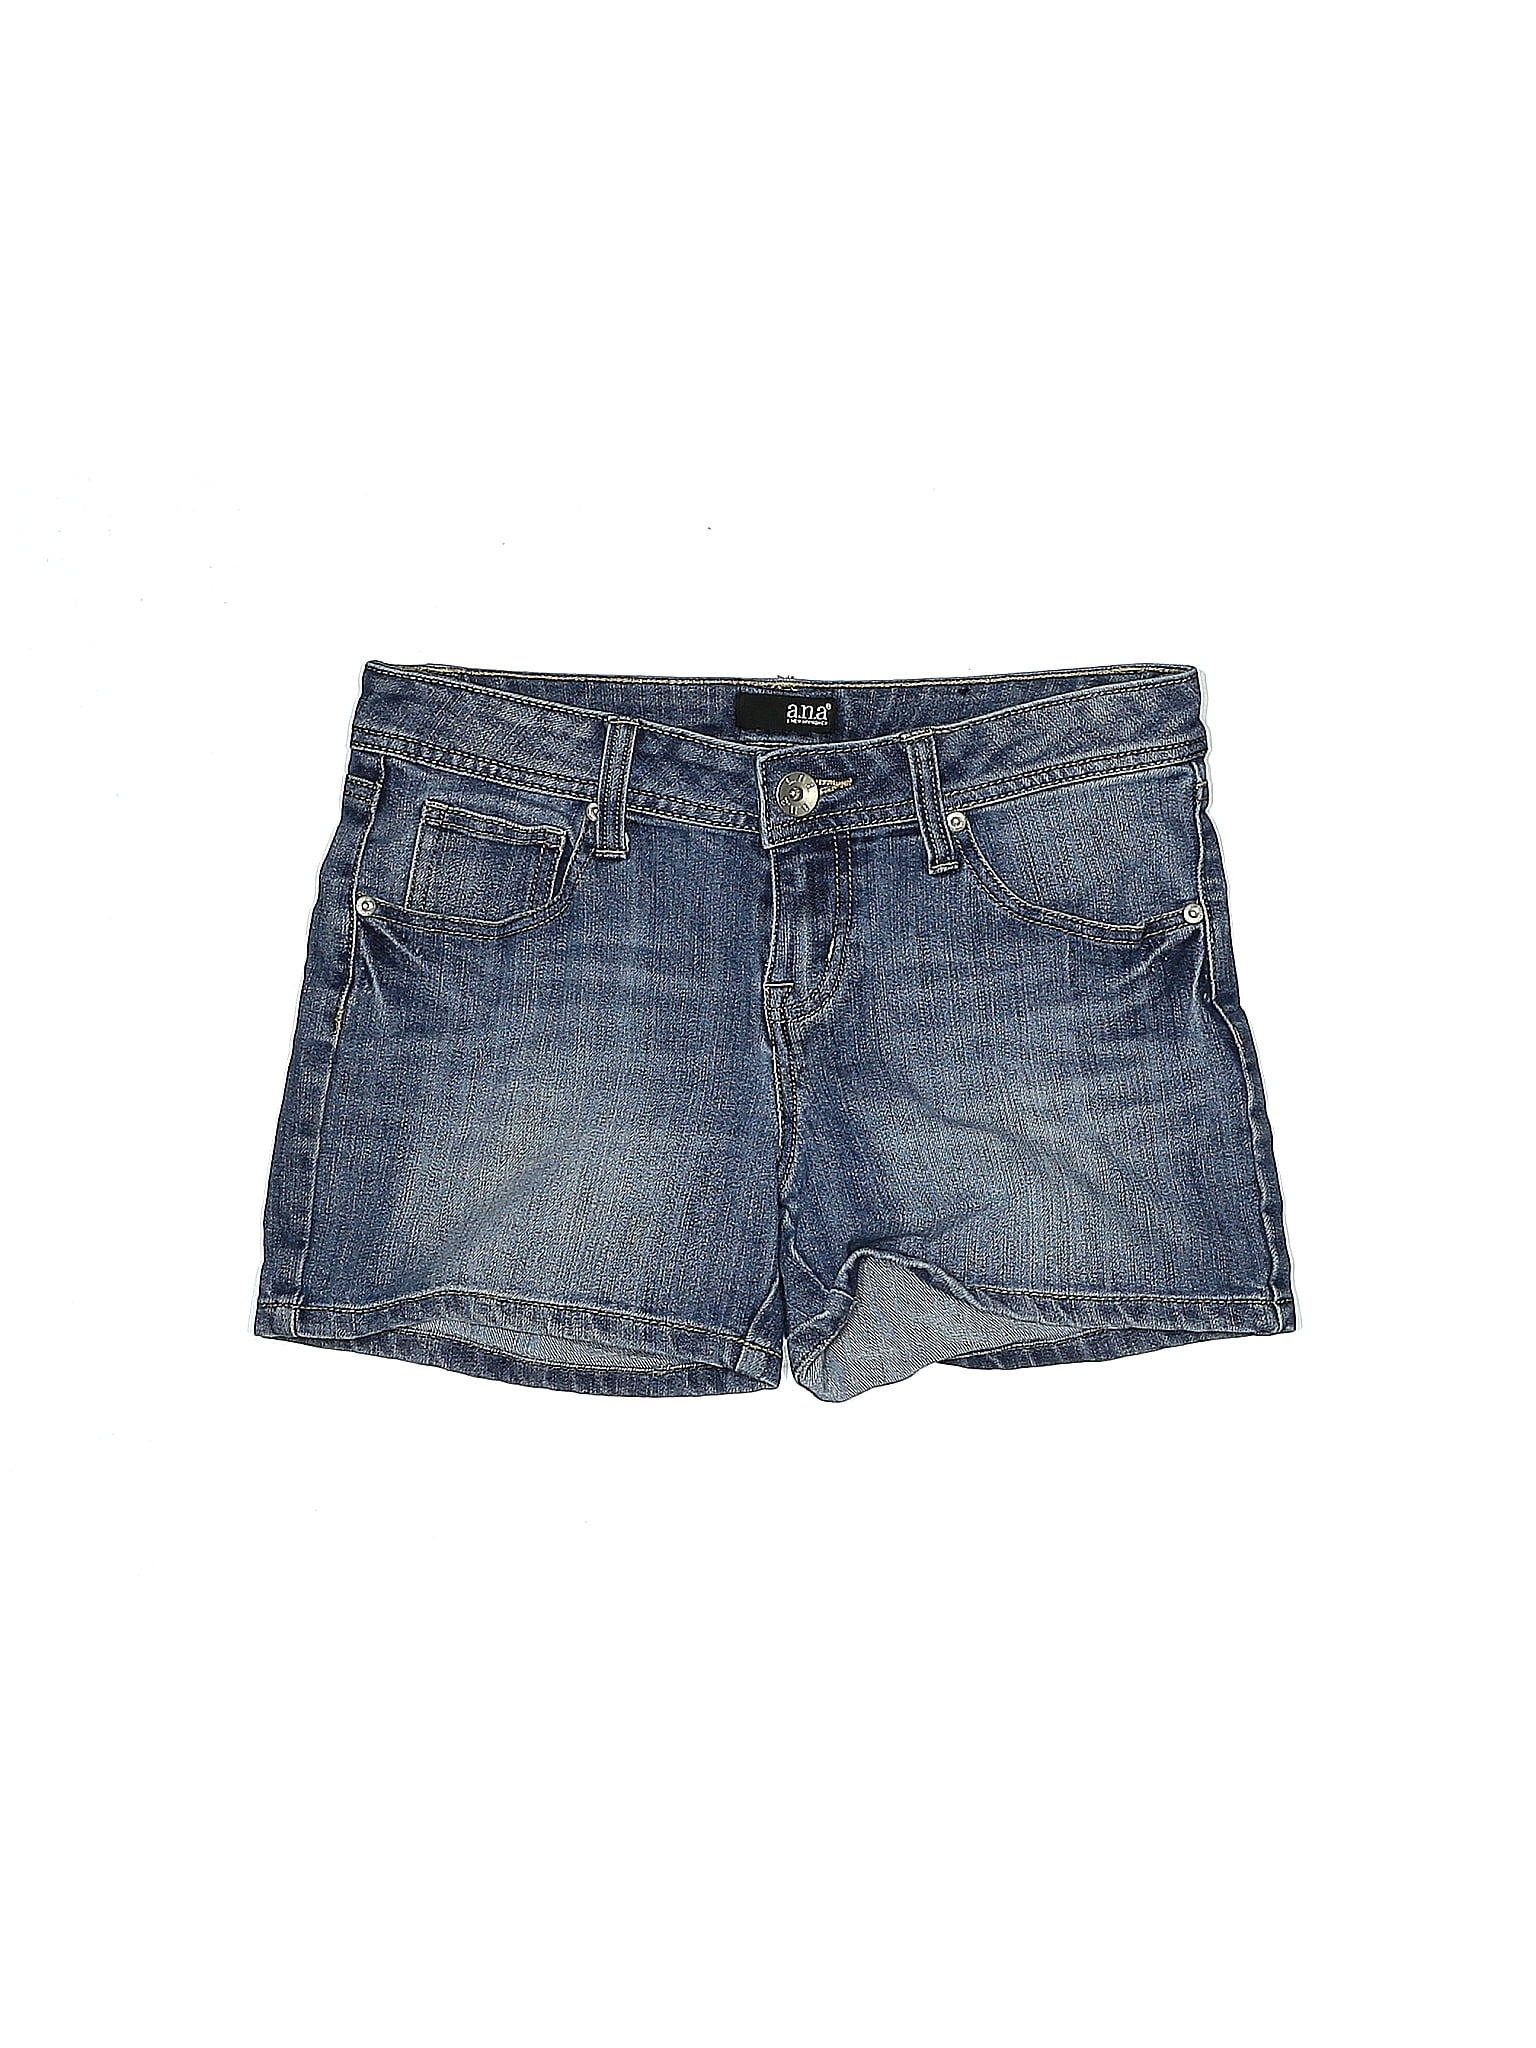 Womens Denim Shorts Summer Short Pants Active A New Approach ANA 8 10 12 14 16 